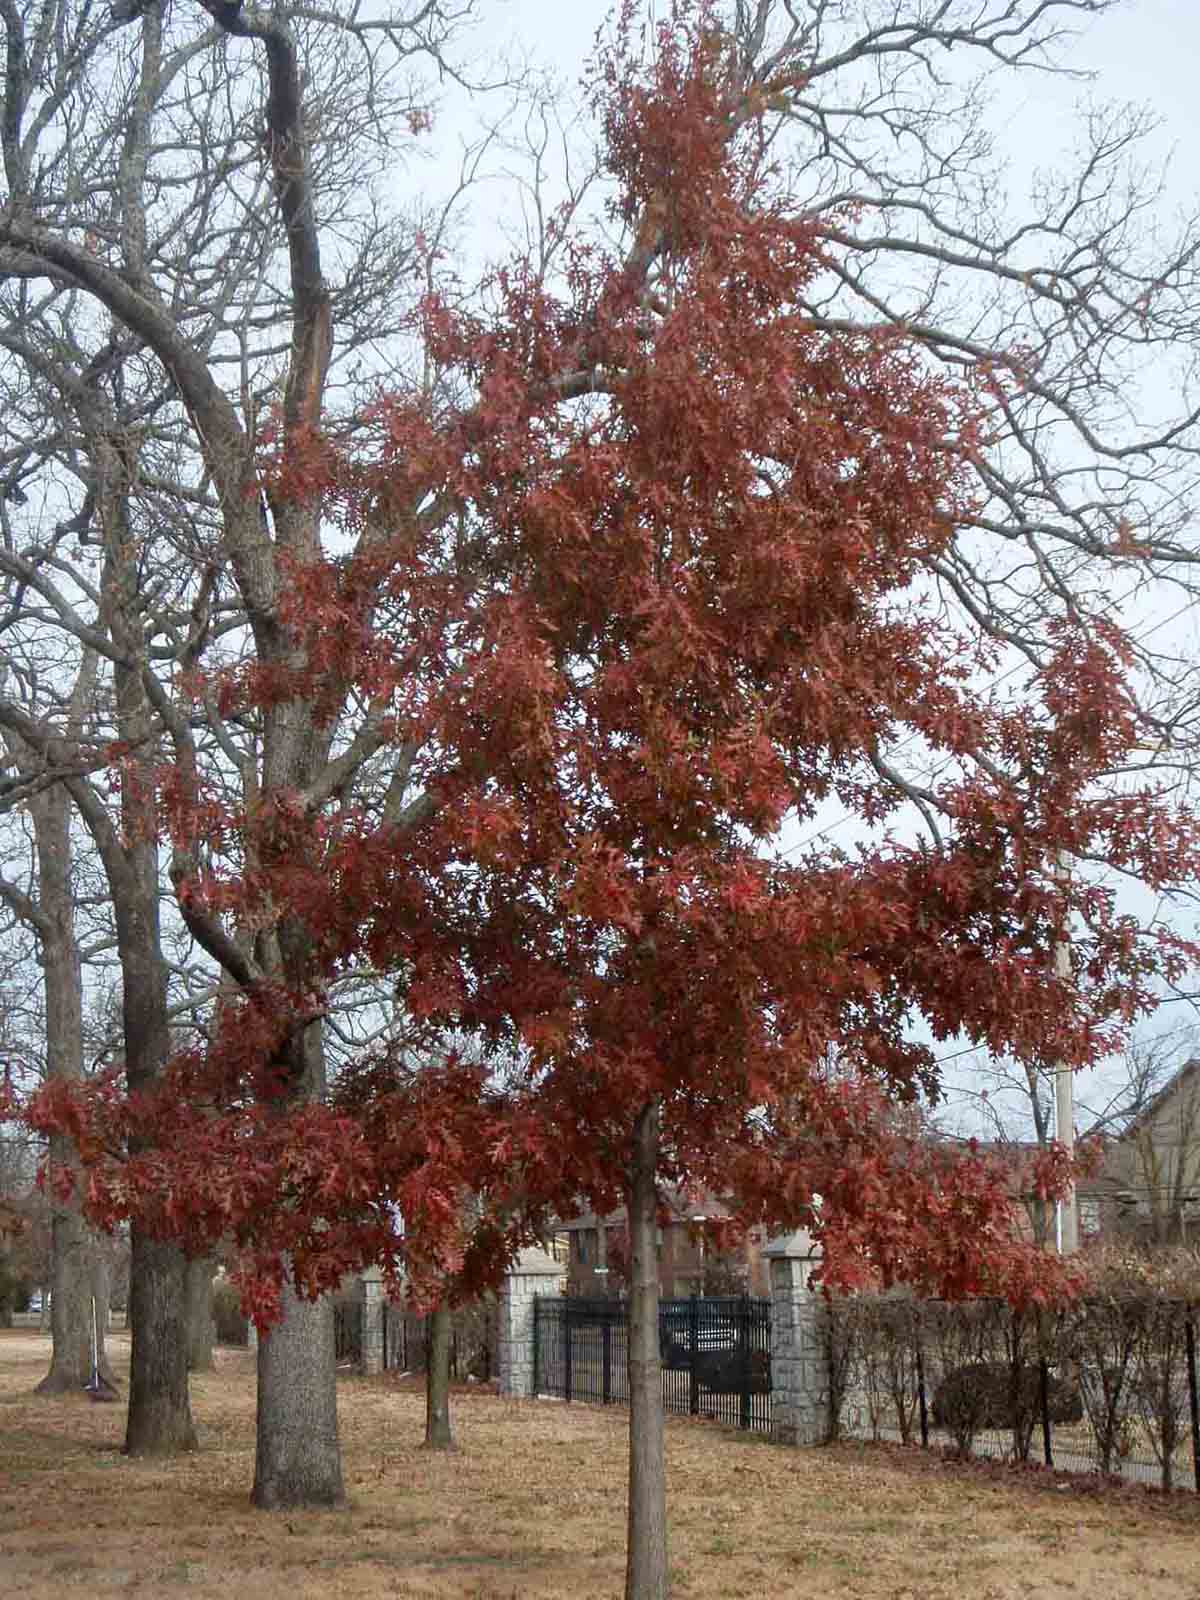 Nuttall oak tree